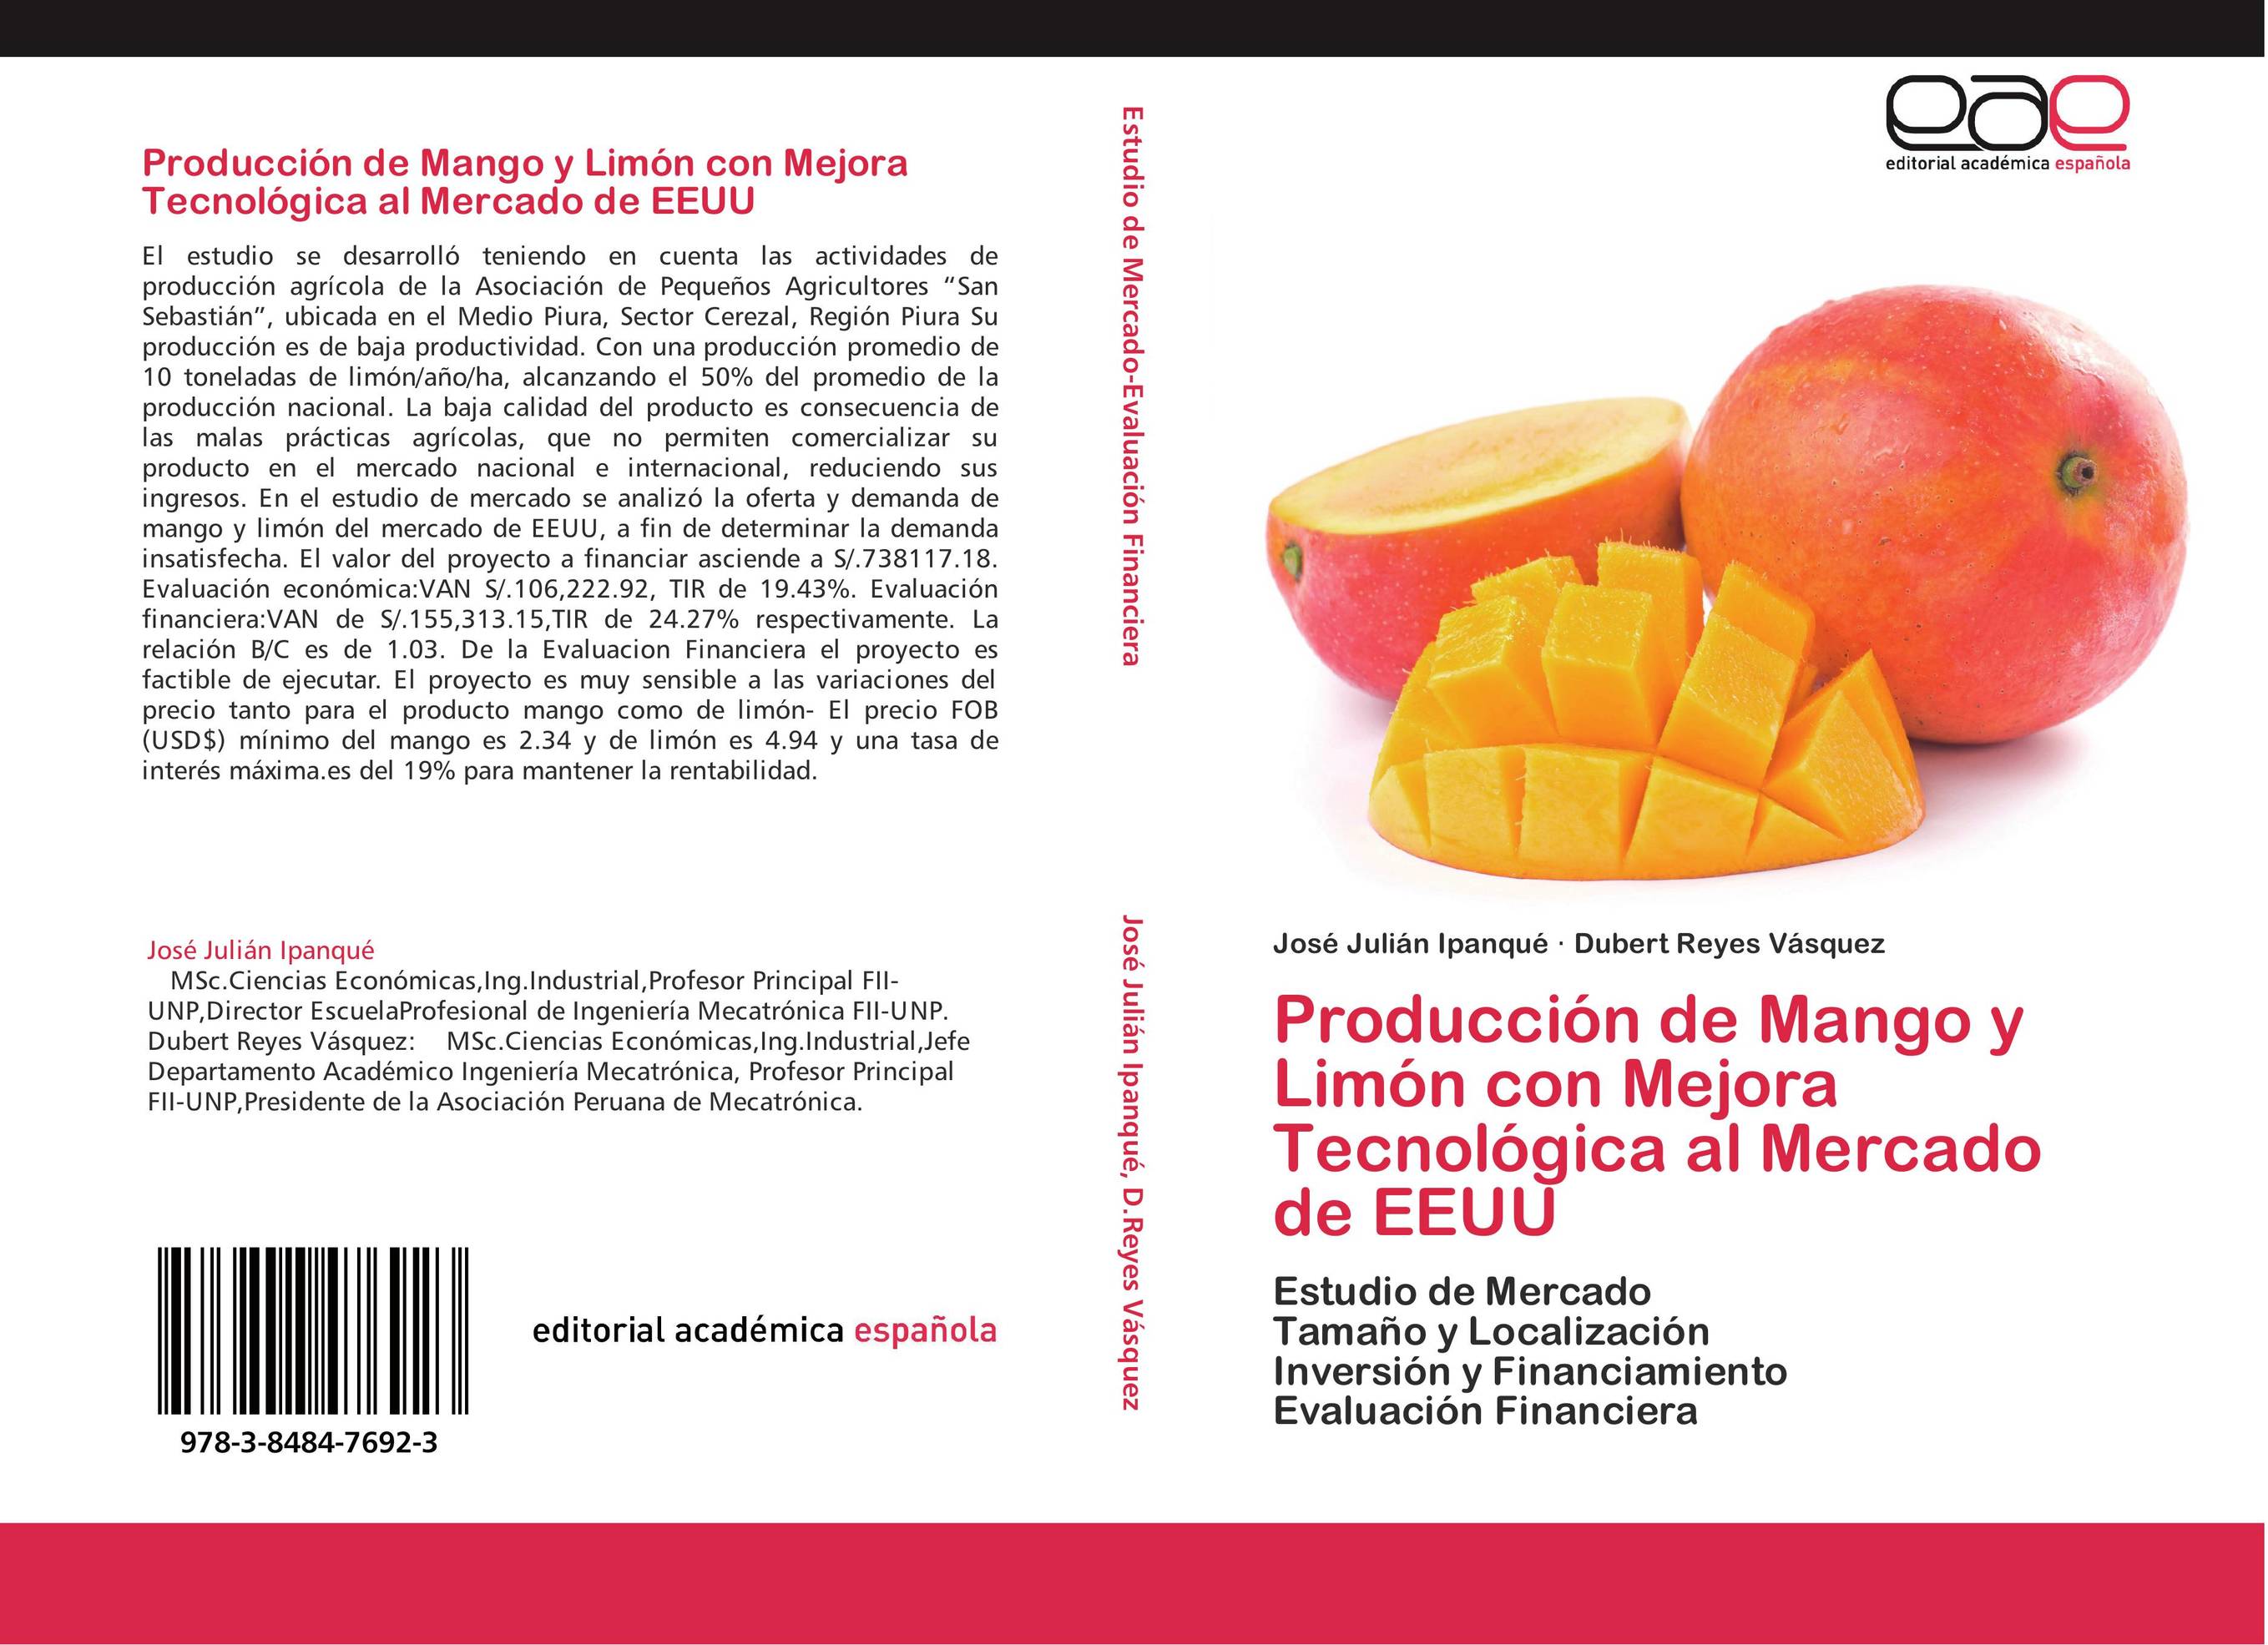 Producción de Mango y Limón con Mejora Tecnológica al Mercado de EEUU